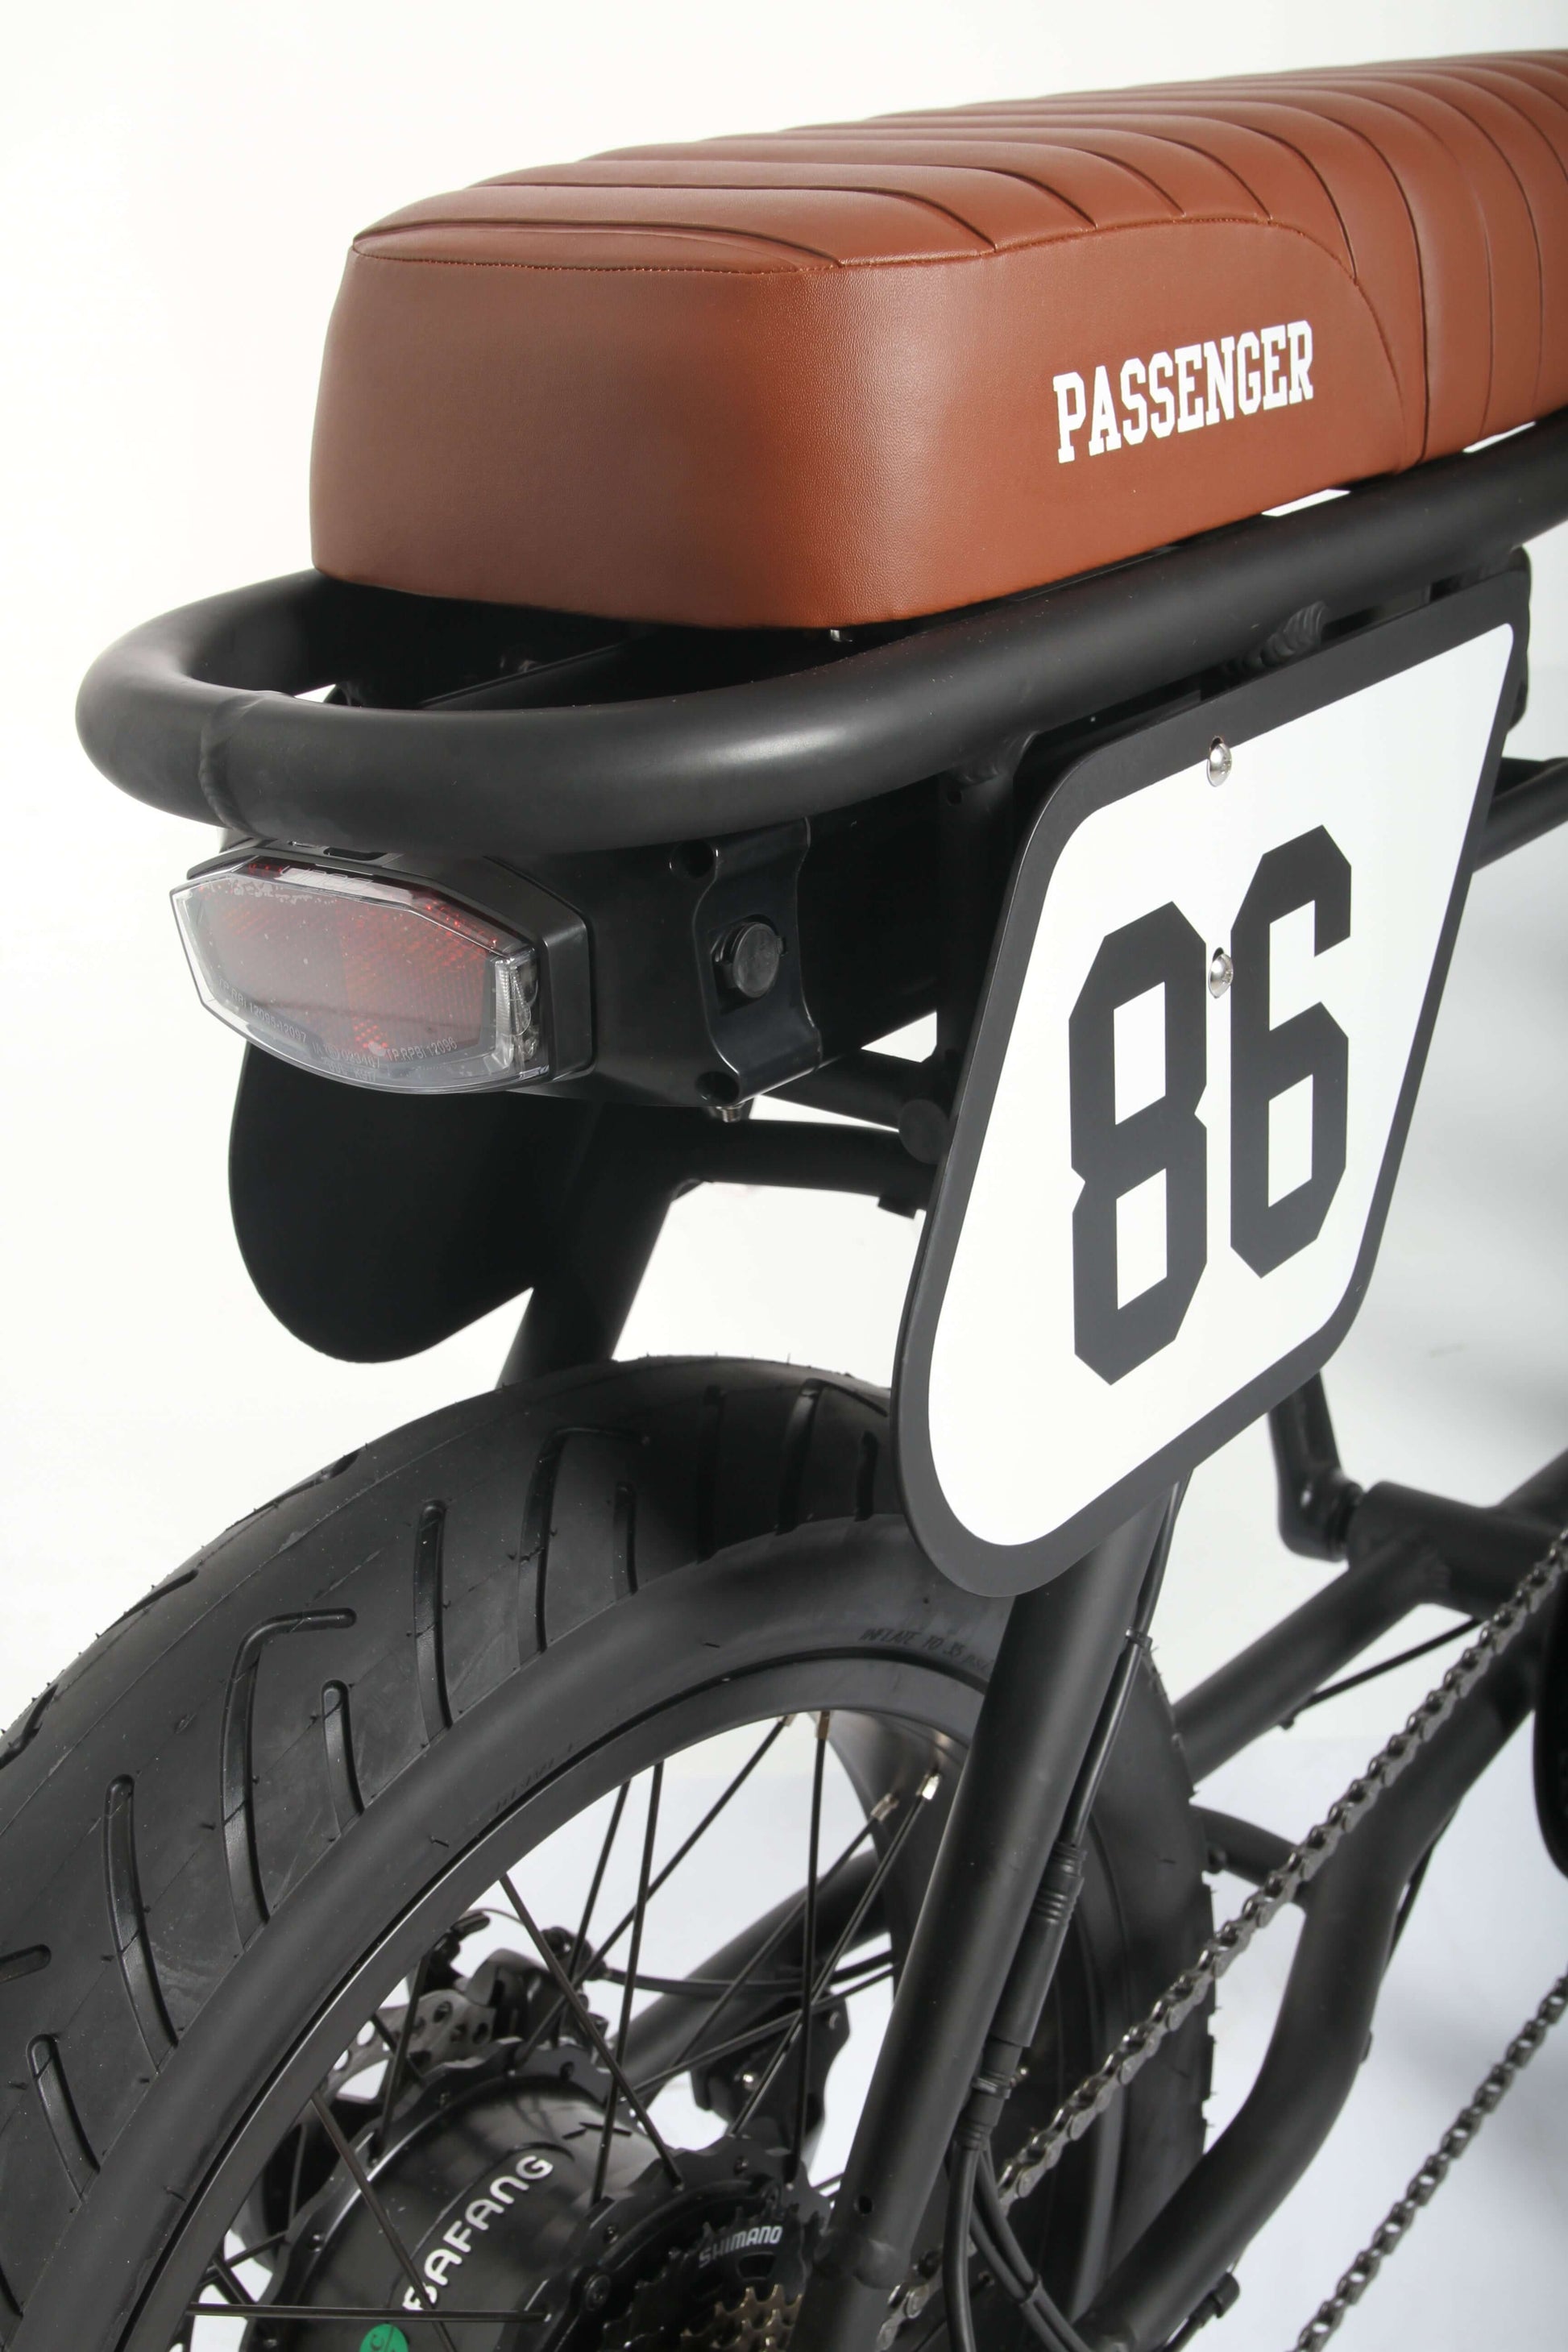 zadel-van-zwarte-fatbike-genaamd-Voltaway-passenger-met-bruine-details